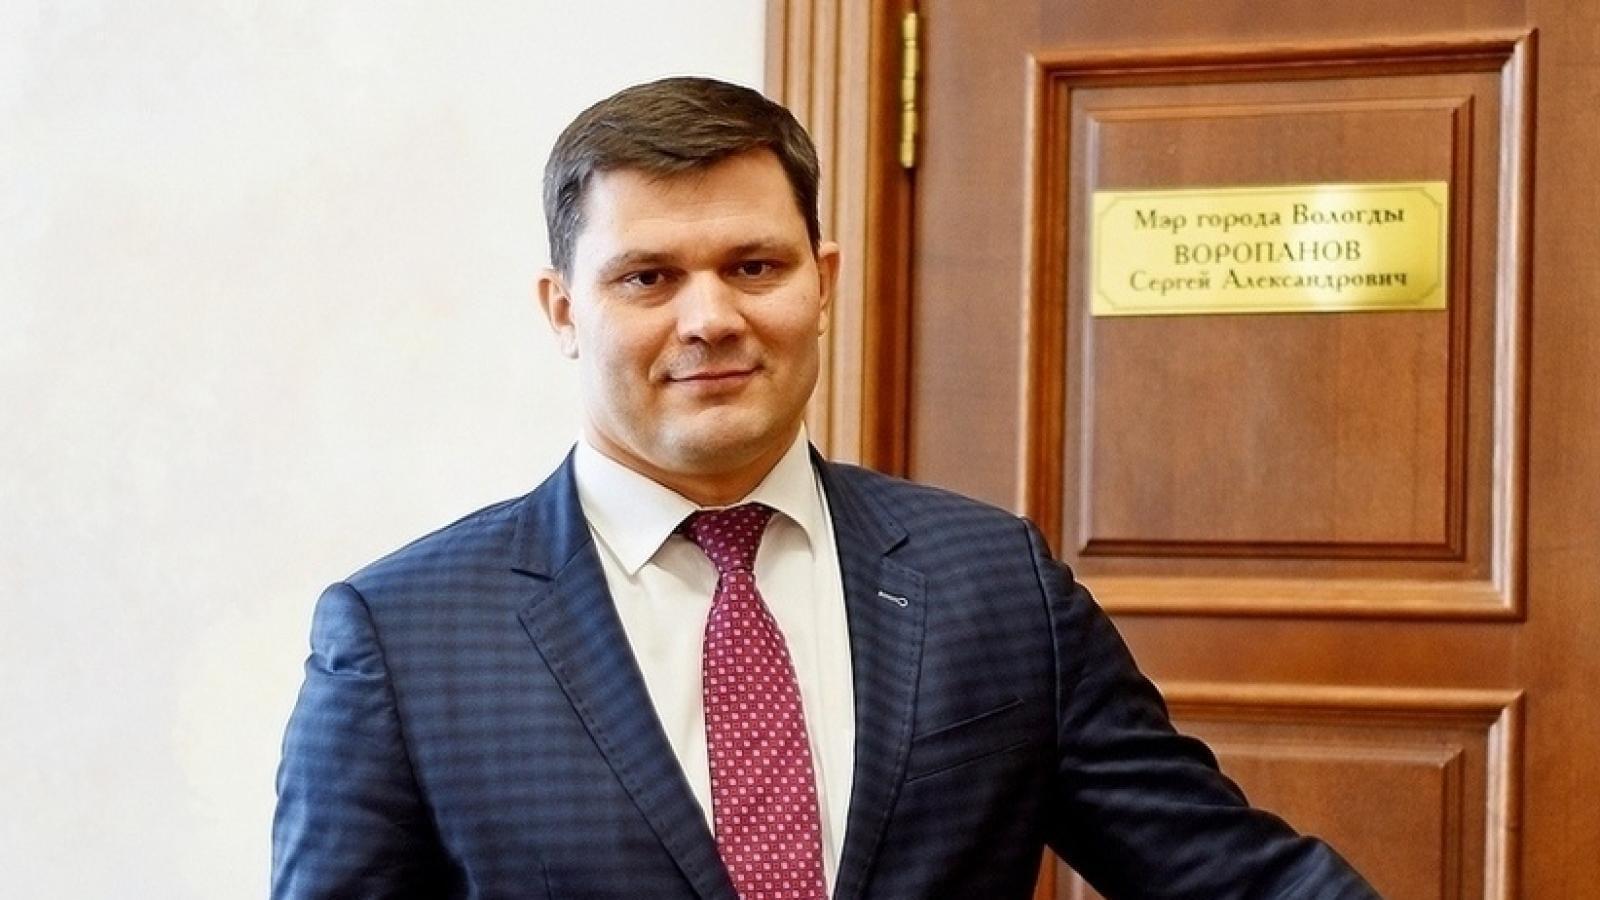 Сергей Воропанов занял высокое место в рейтинге мэров